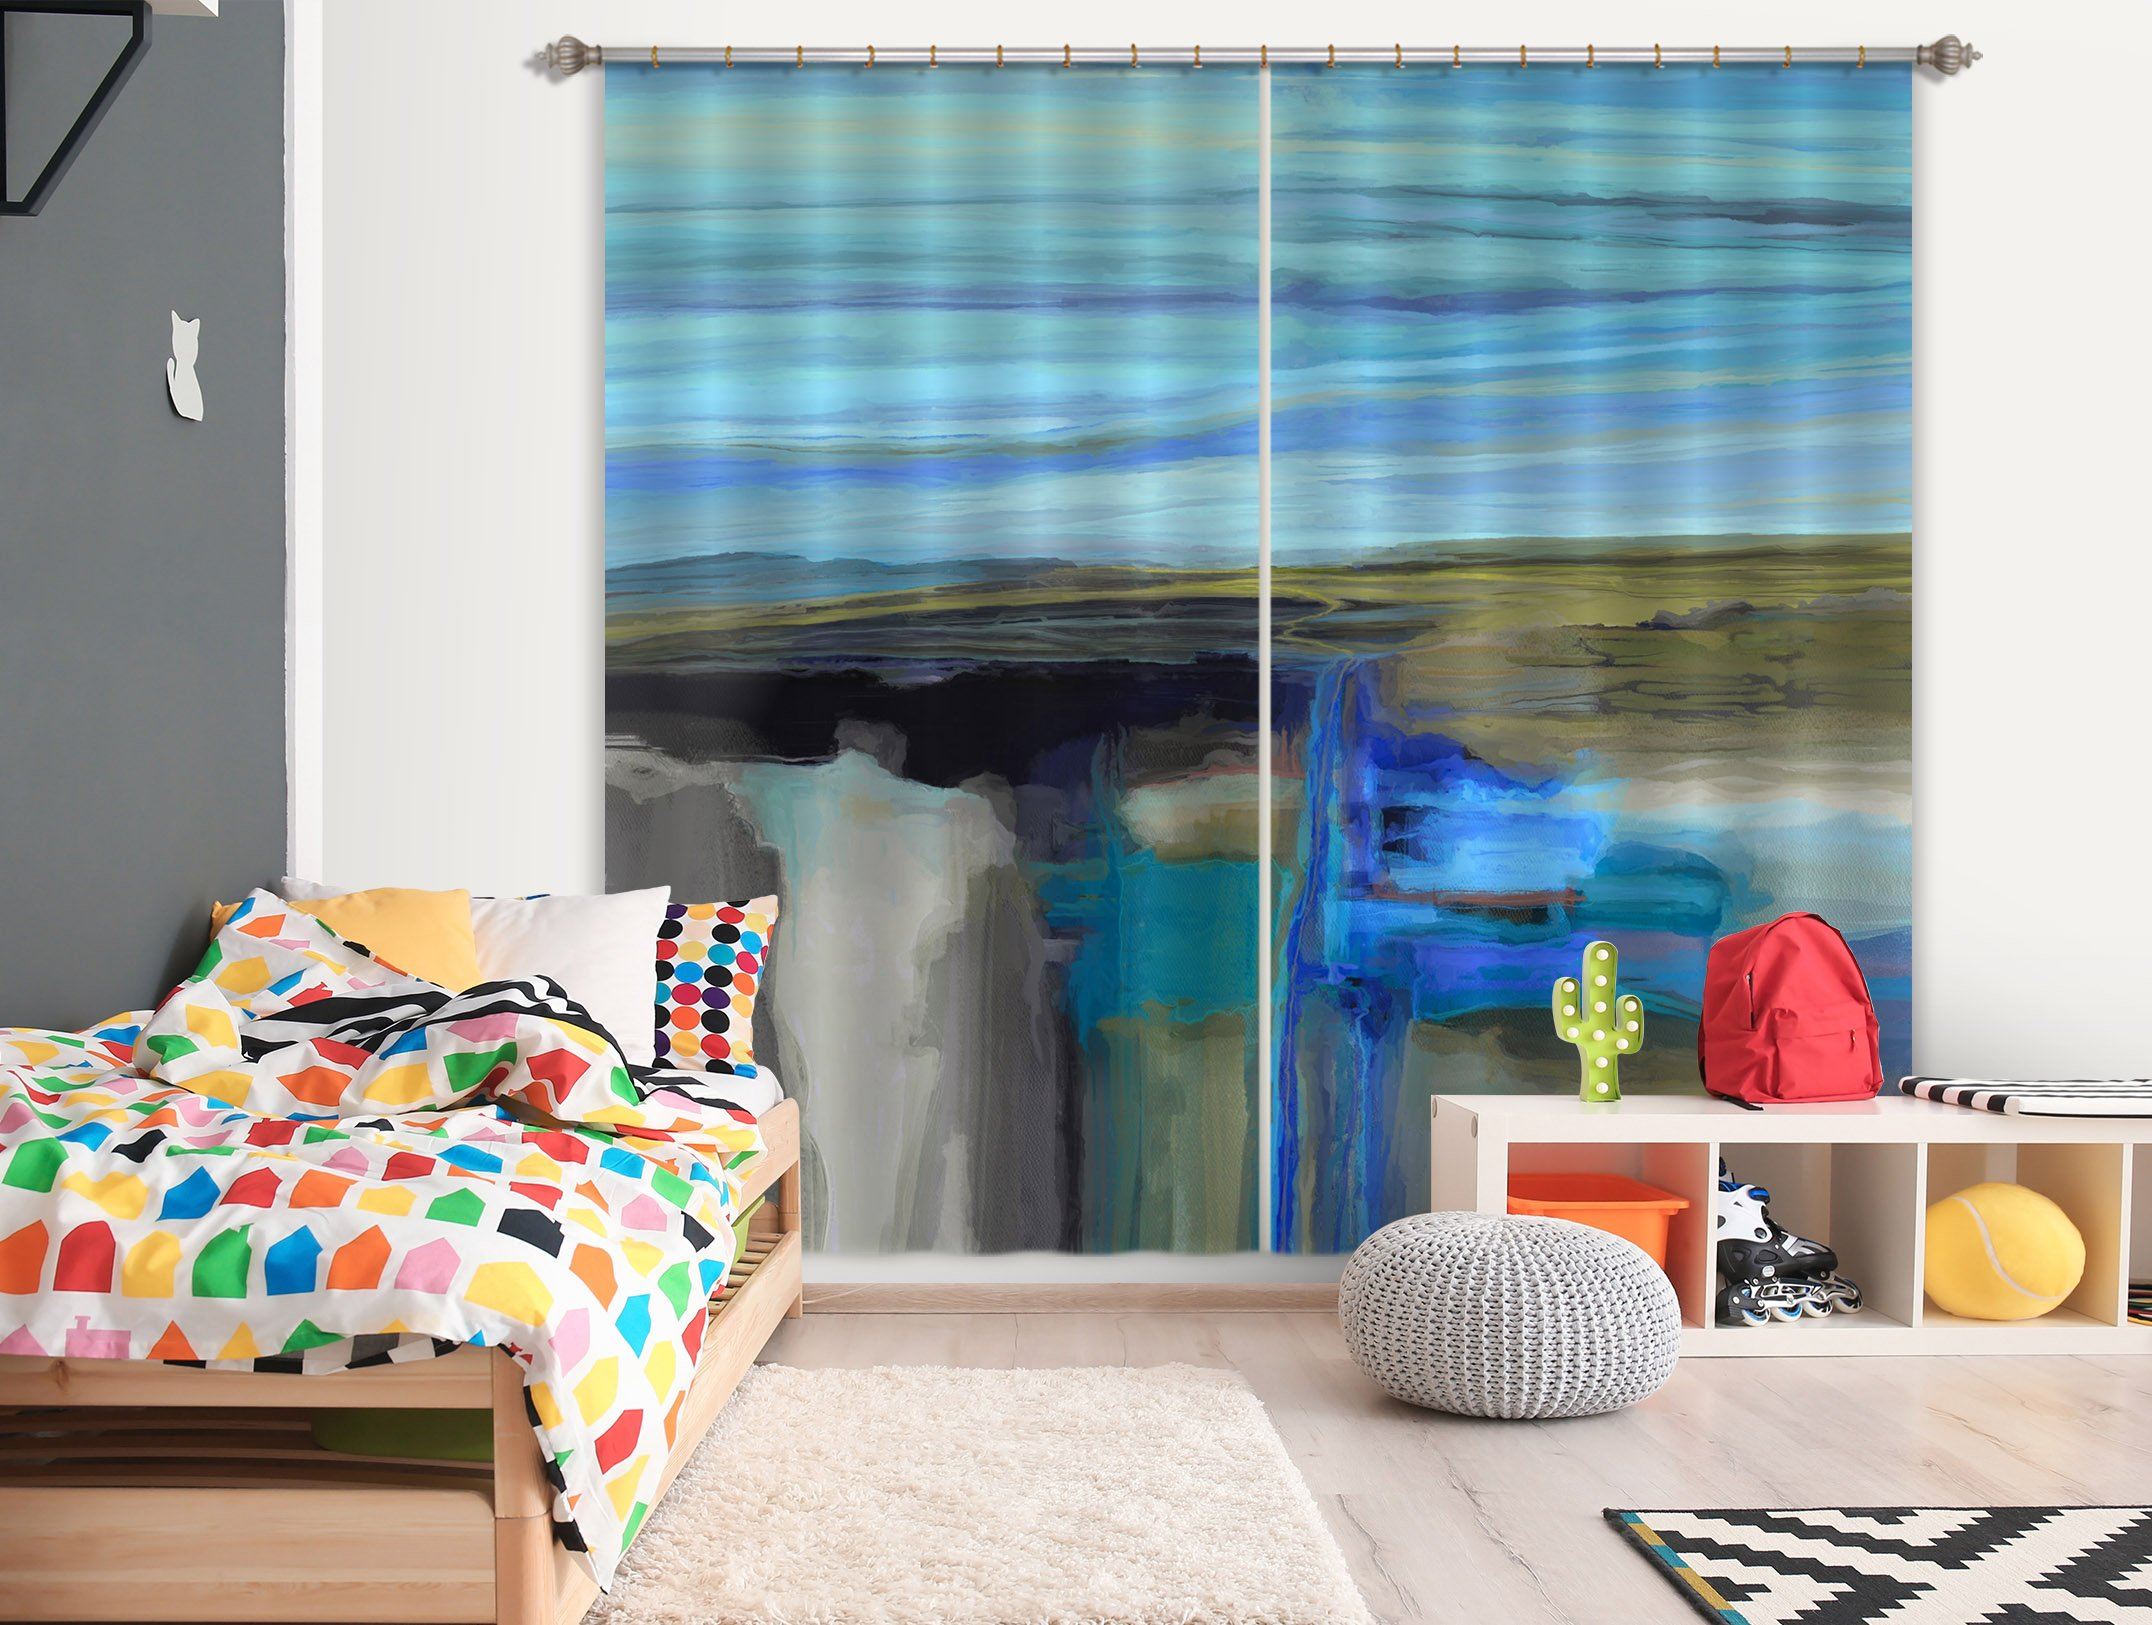 3D Blue Lake 065 Michael Tienhaara Curtain Curtains Drapes Curtains AJ Creativity Home 